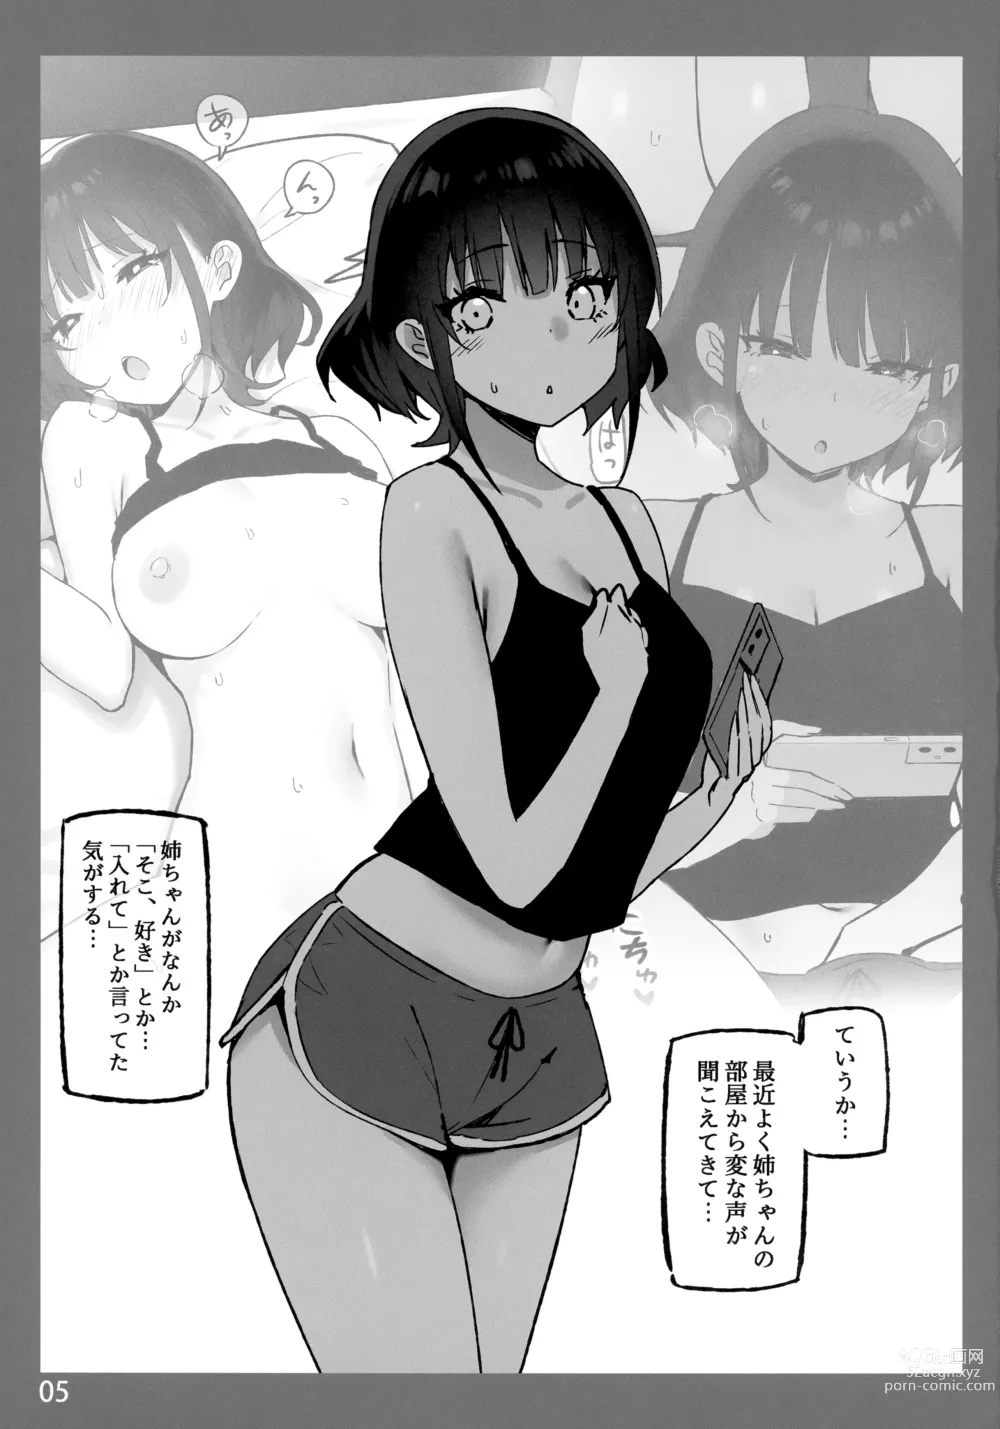 Page 5 of doujinshi Onee-chan to Torokeru Kimochi SP 2